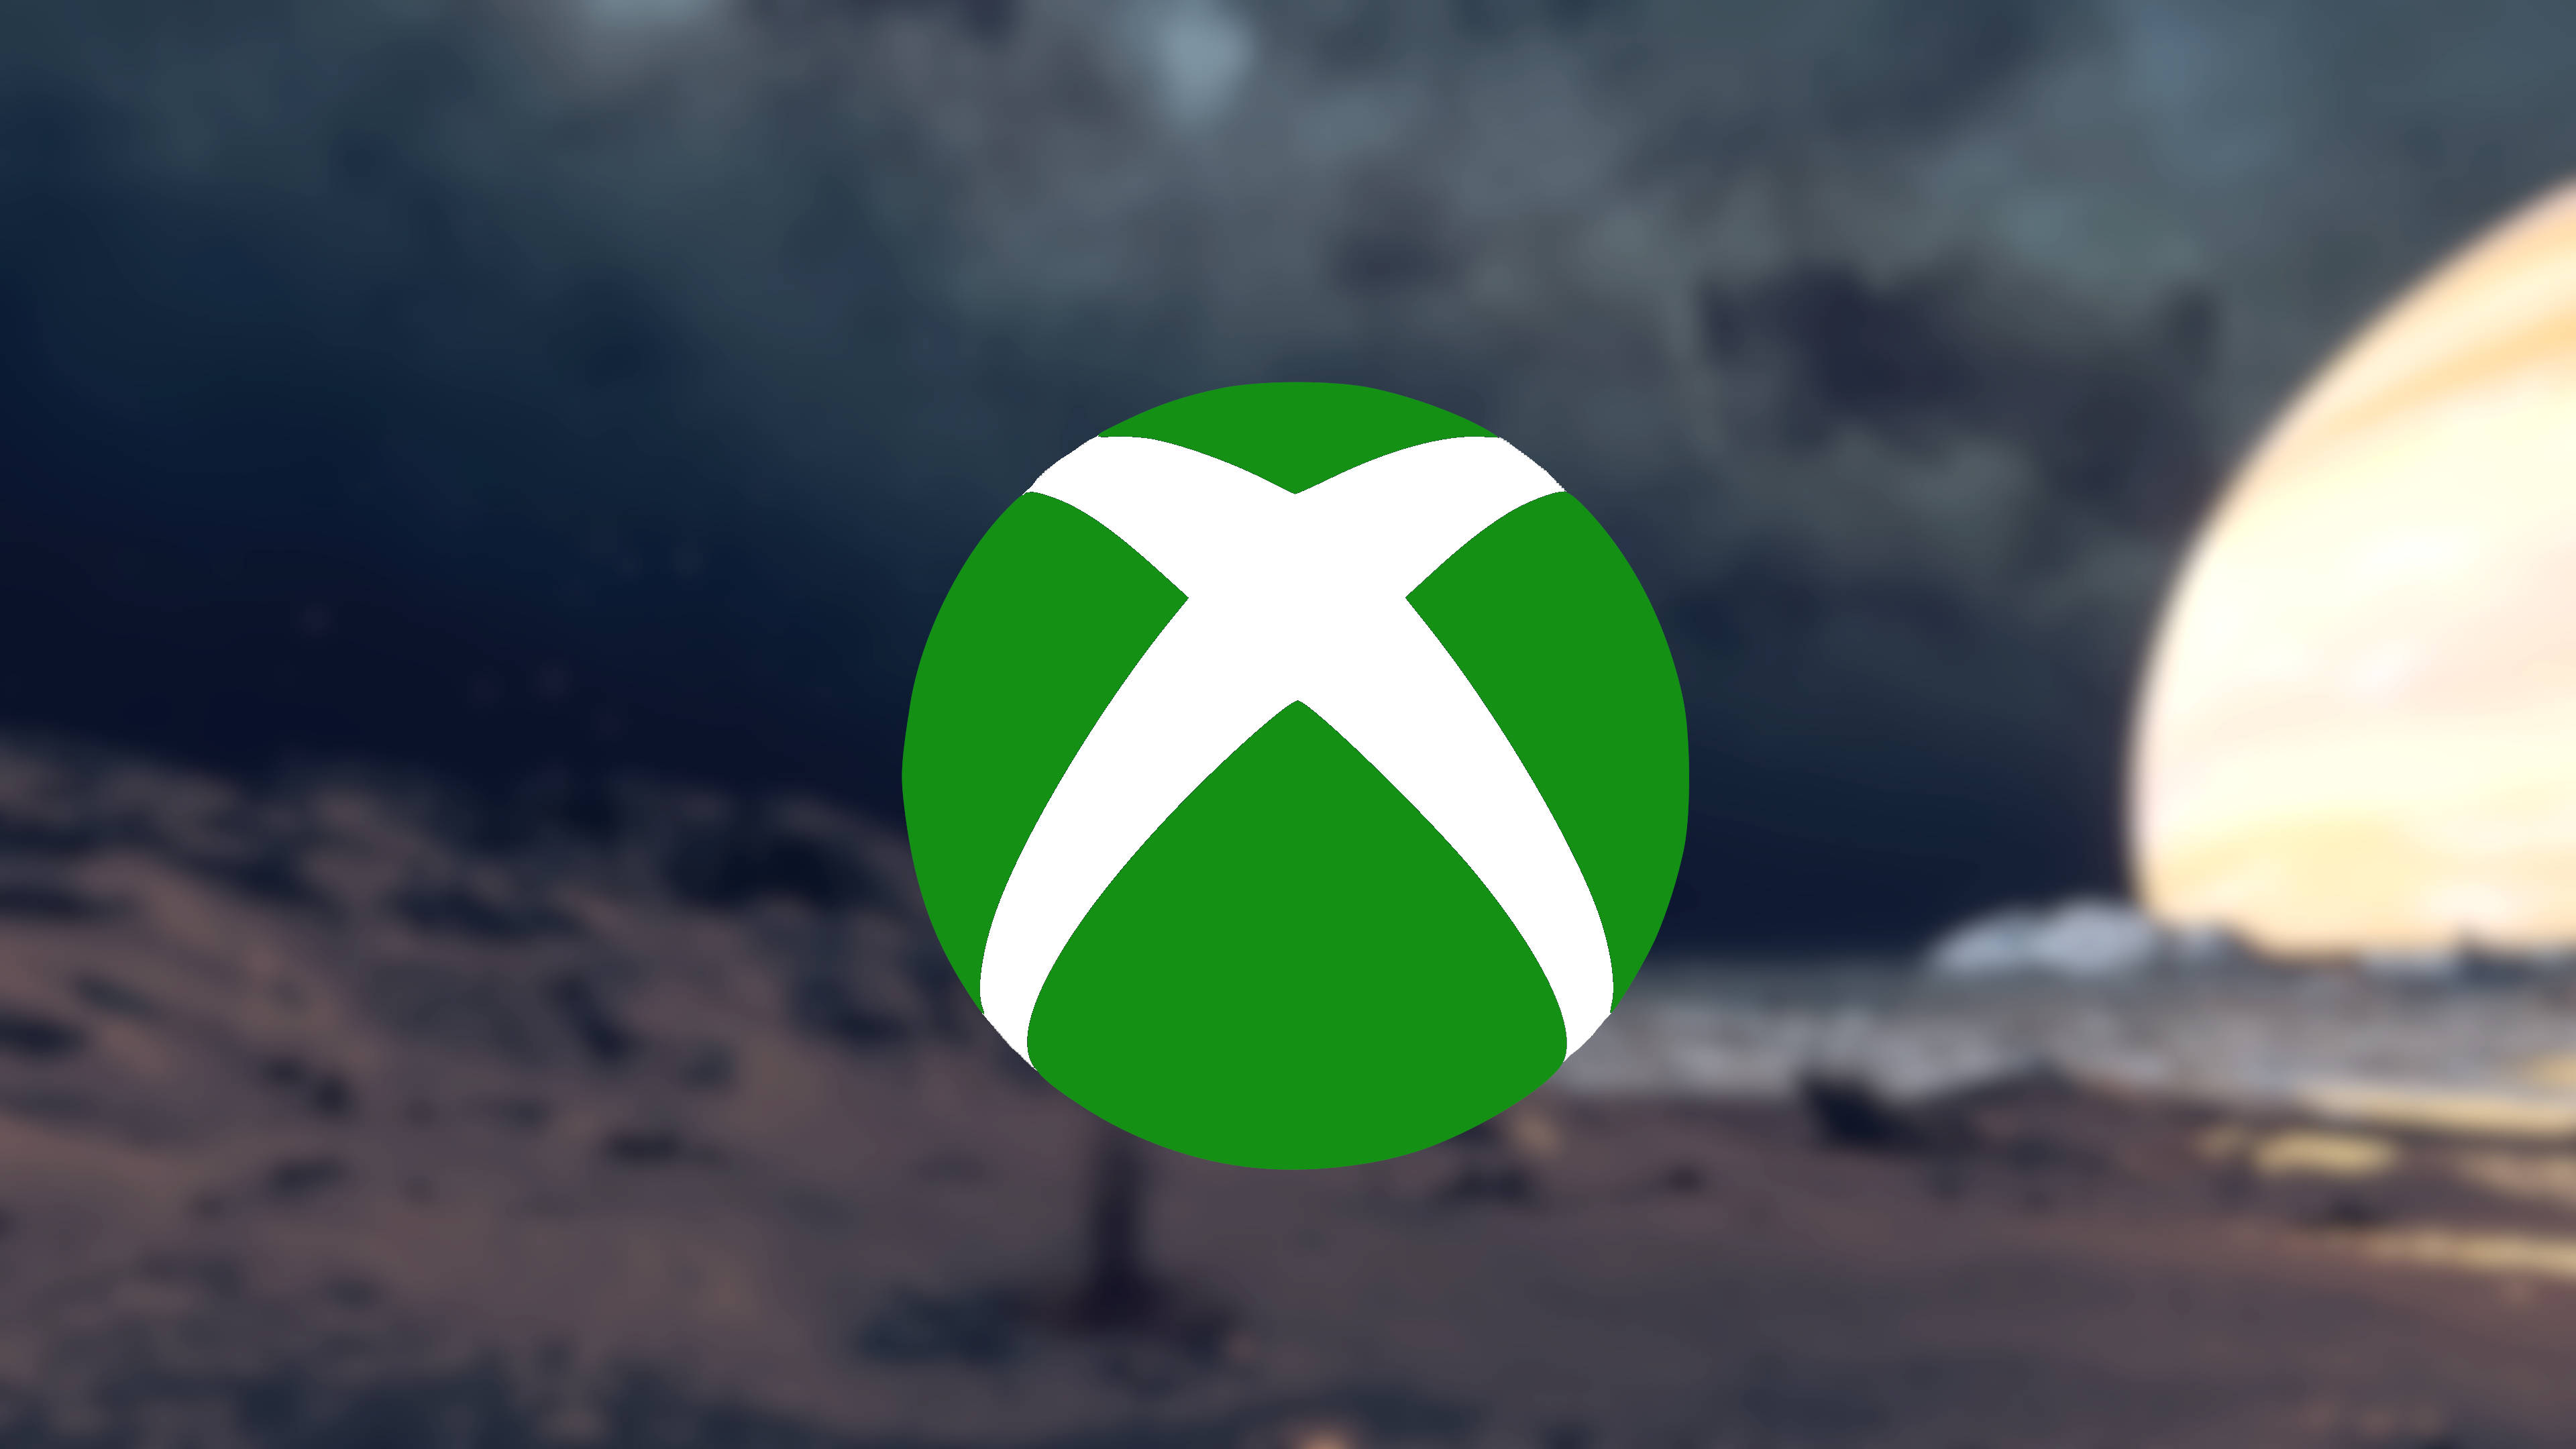 Xbox gamepass - Roblox